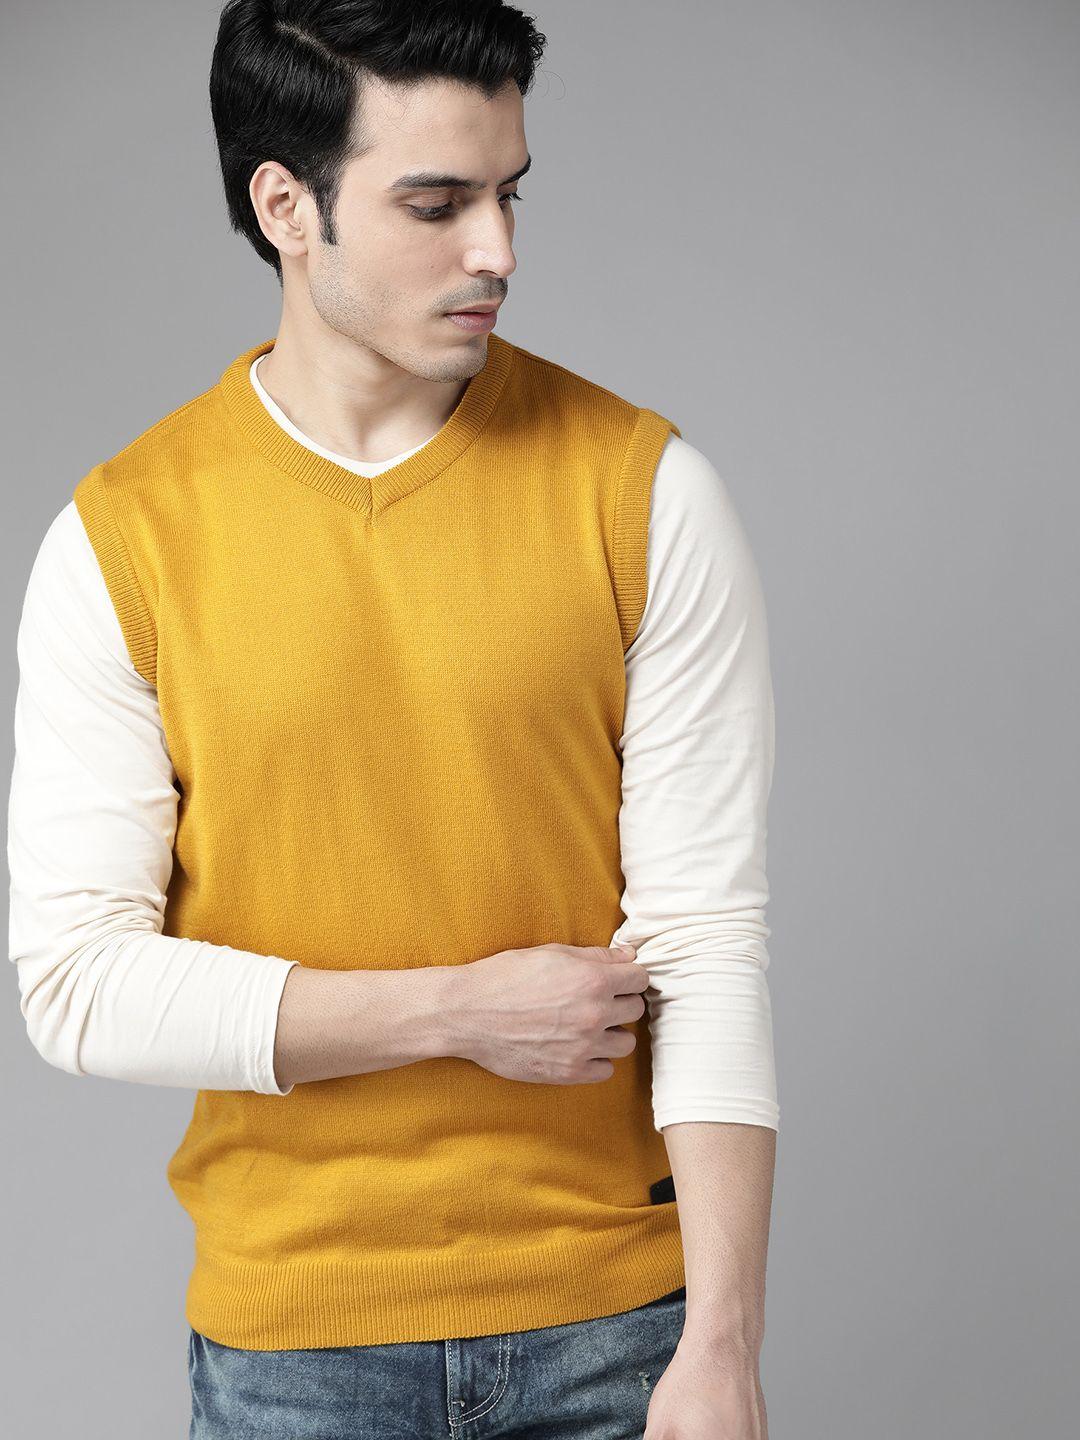 roadster-men-mustard-yellow-solid-sweater-vest